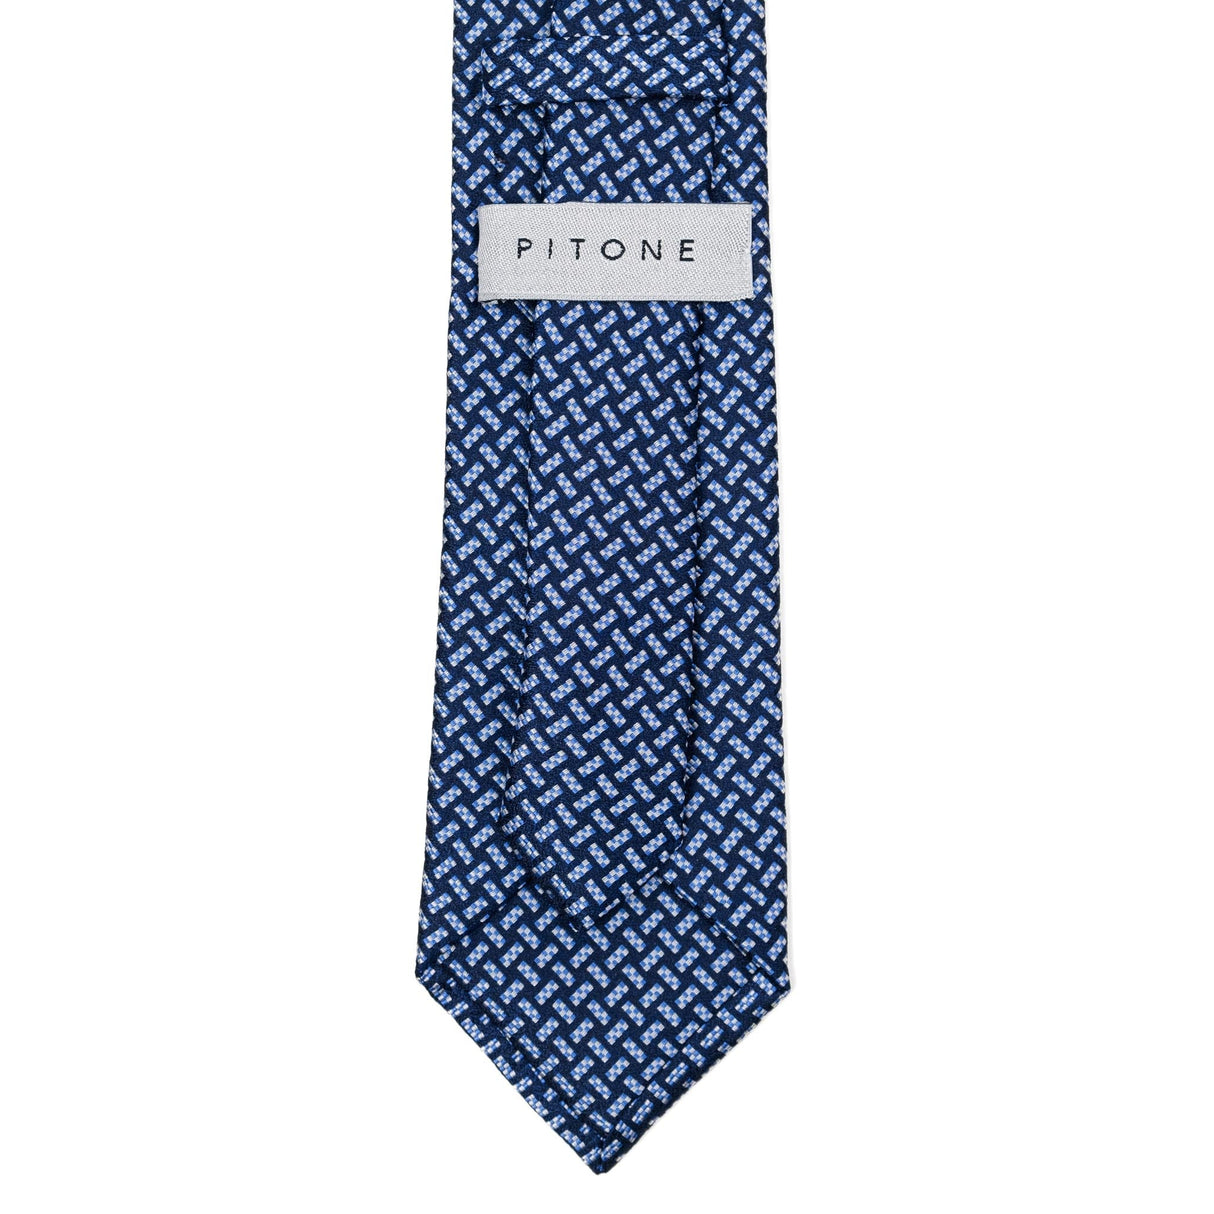 Cravatta In Seta Incordato Scacchi Blu/Azzurro